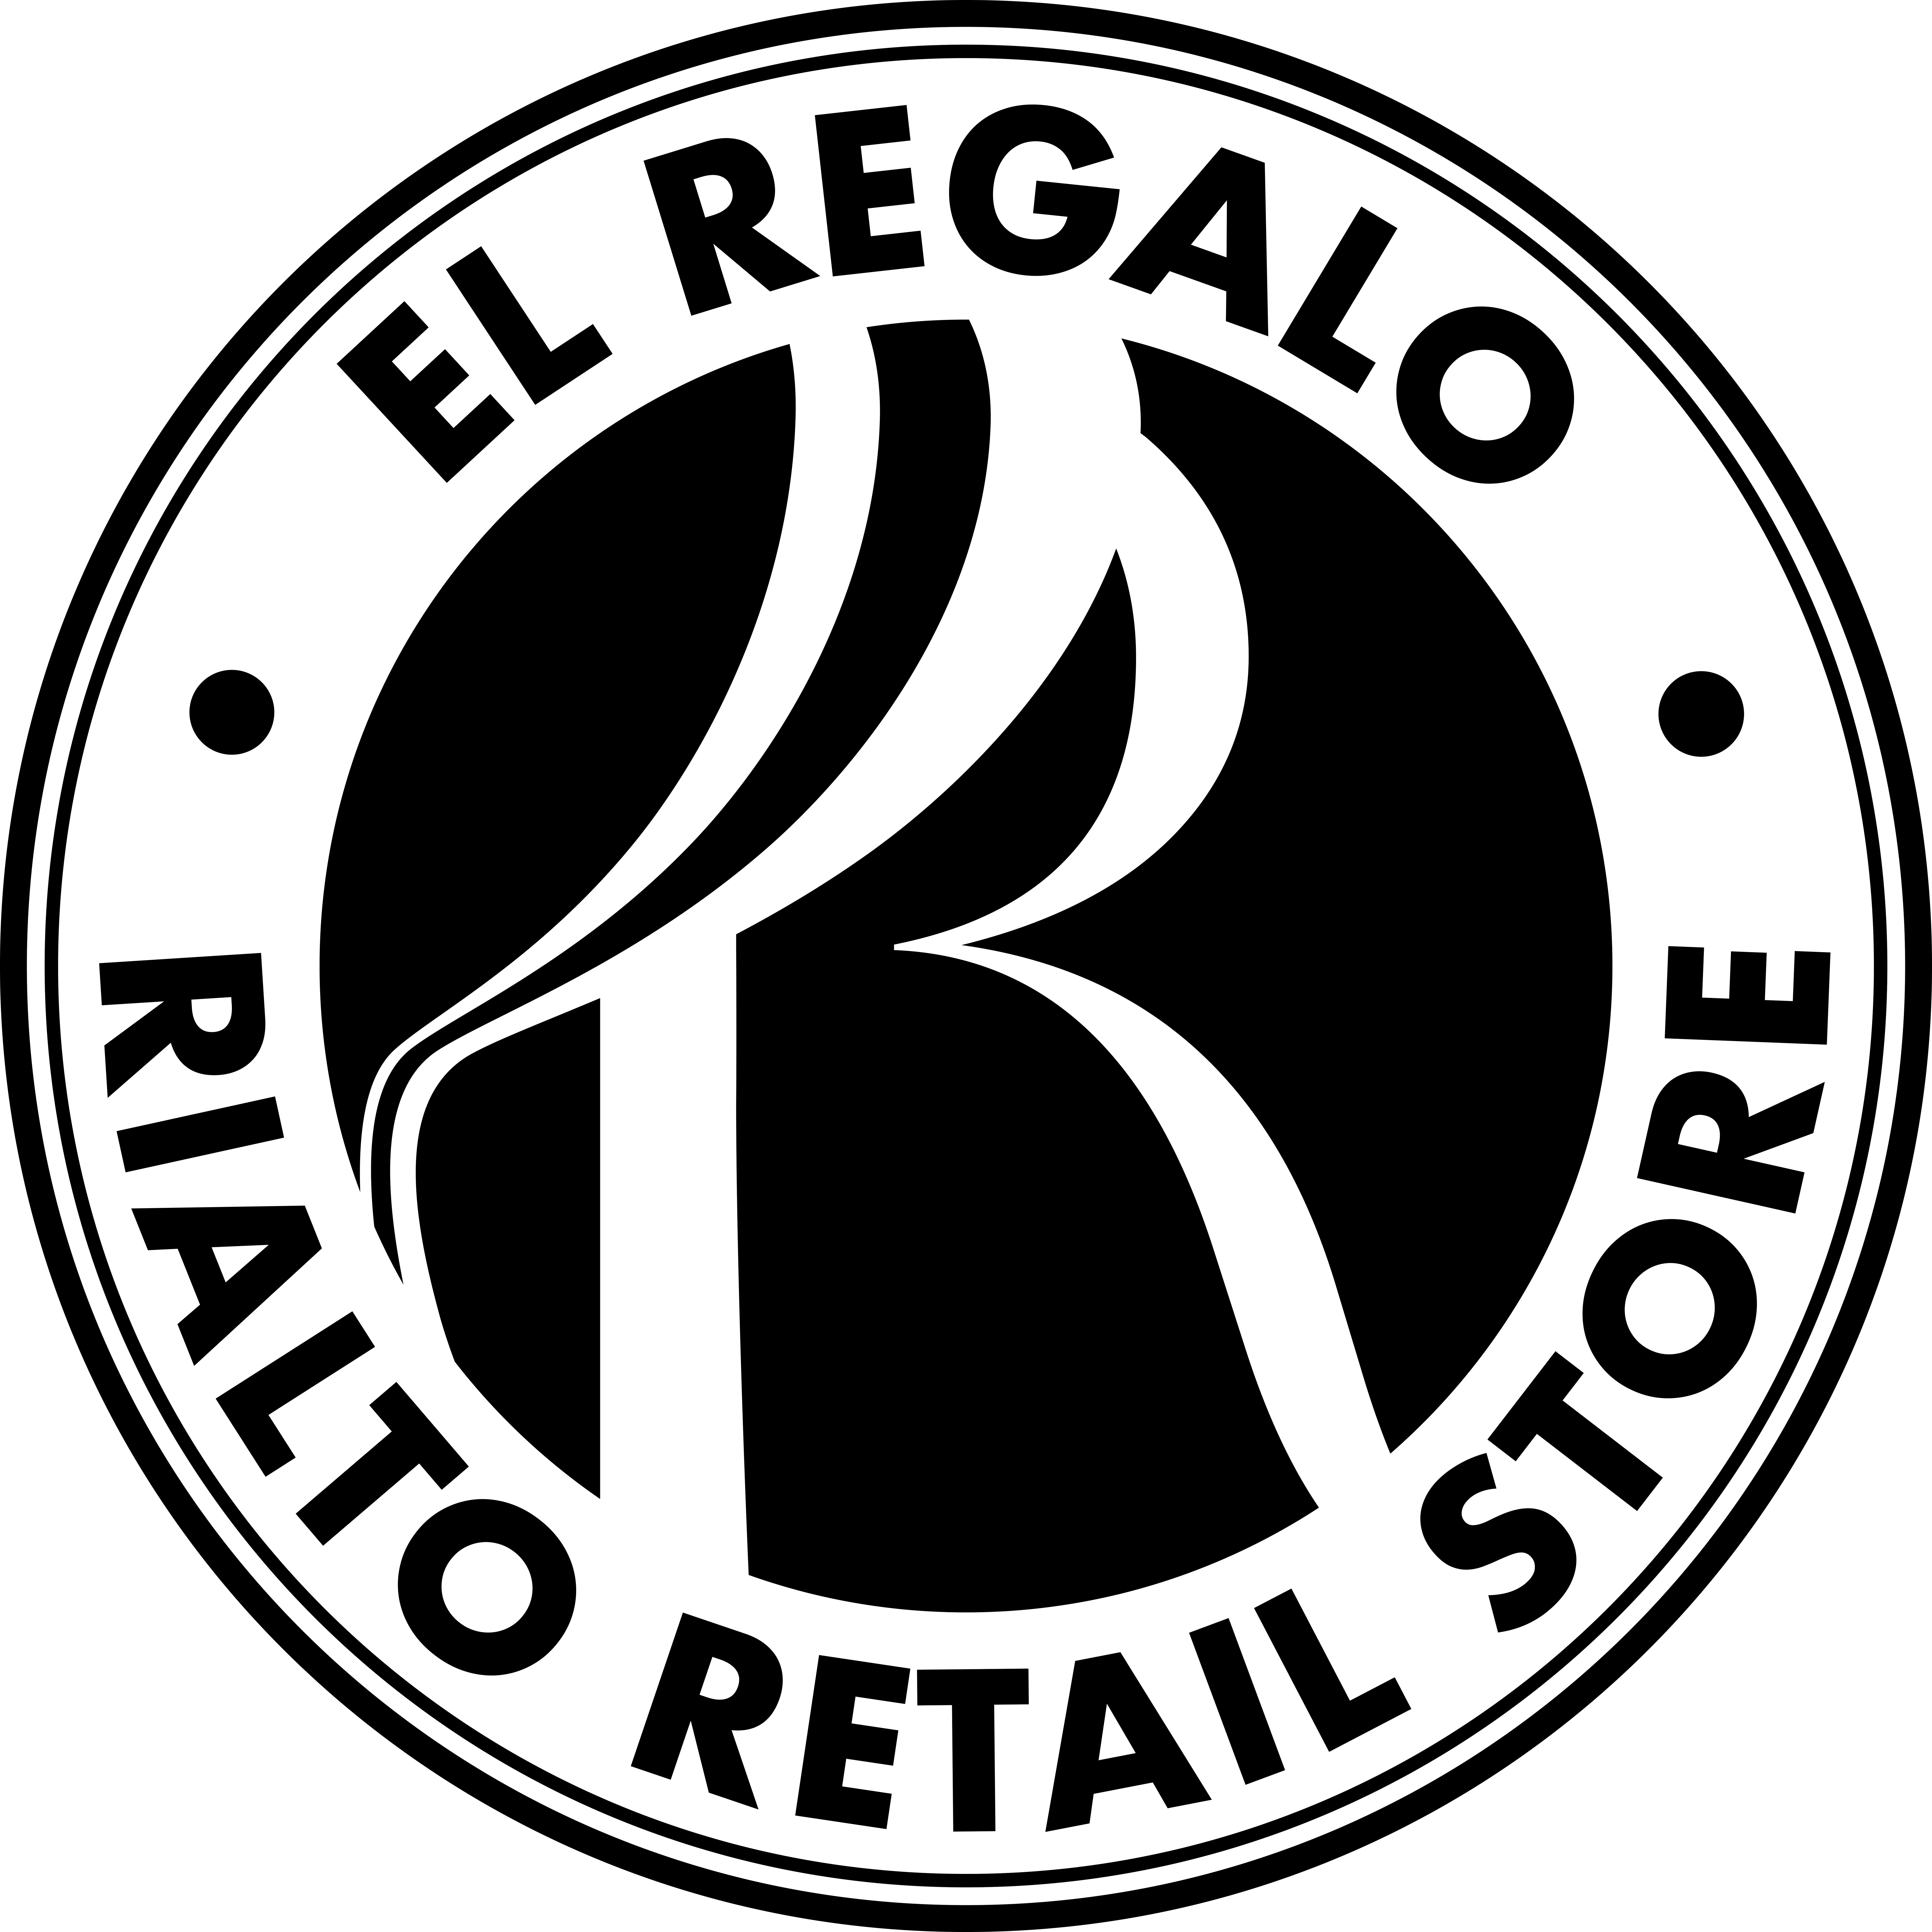 El Regalo - Rialto Retail Store logo in black and white featuring the Rialto 'R' in the center.